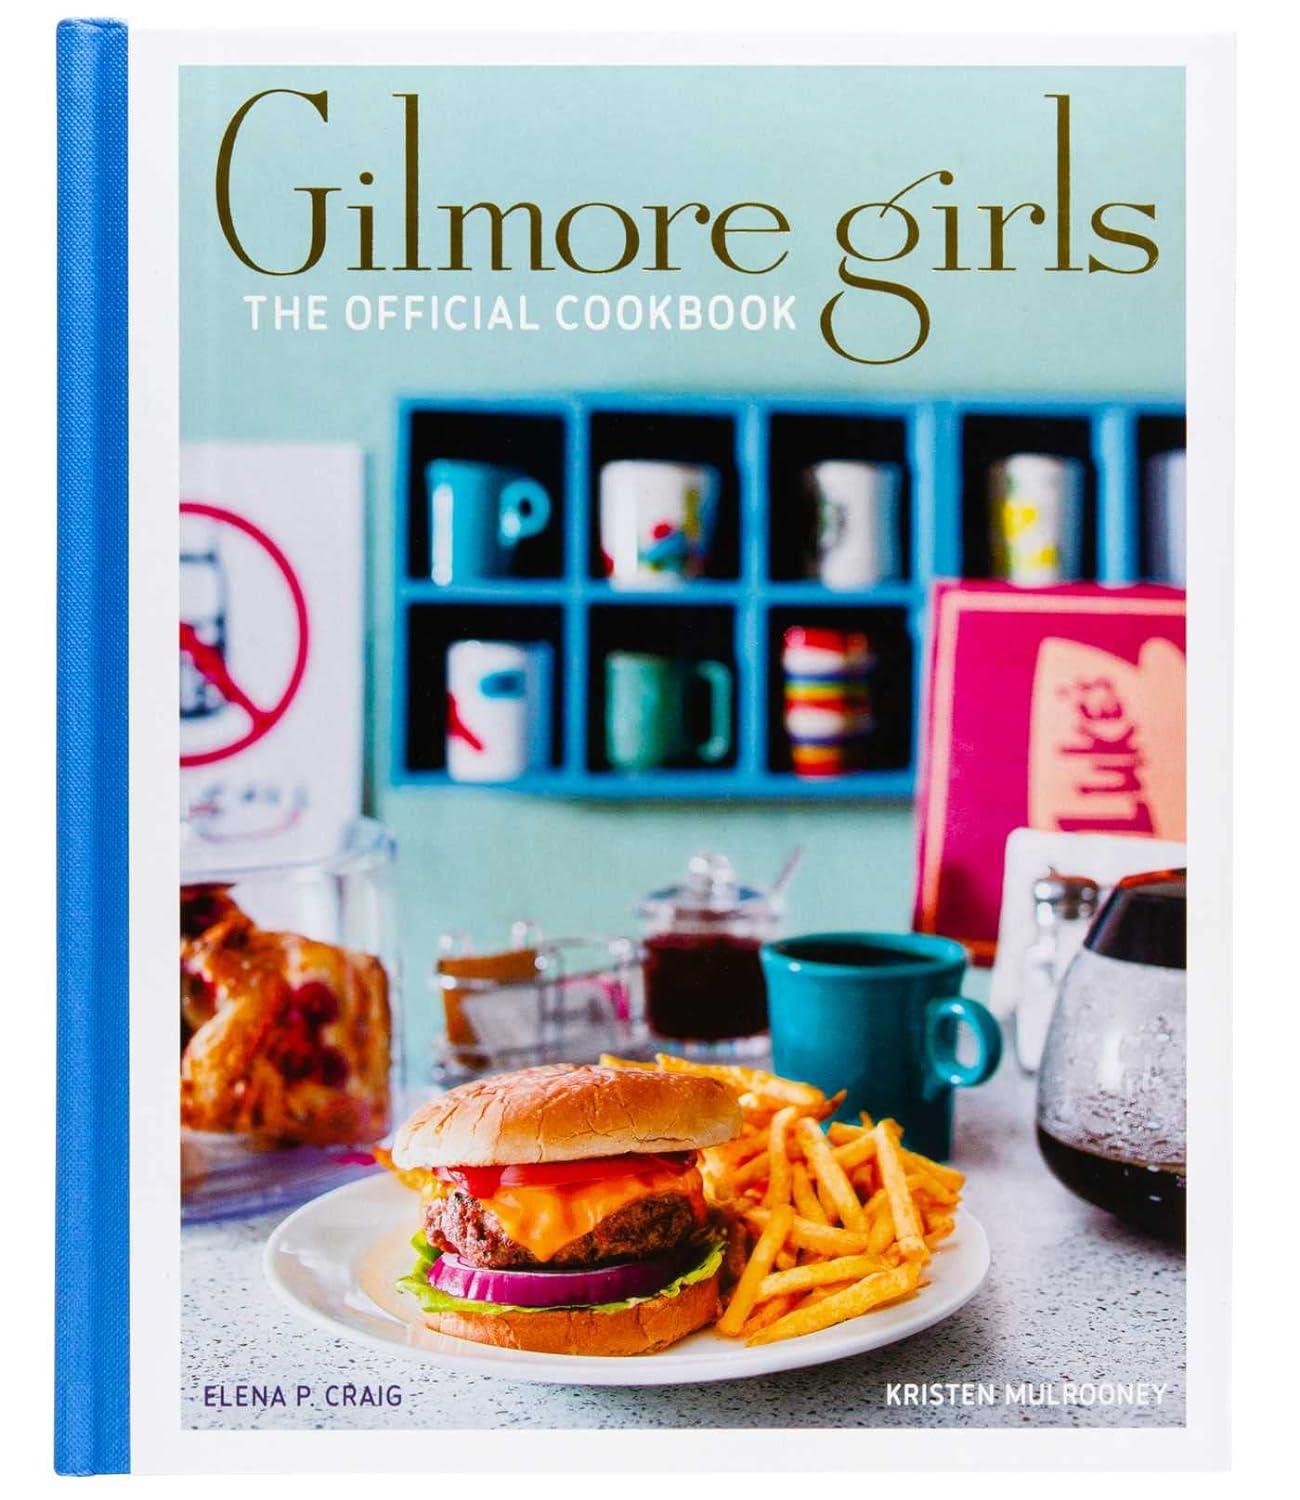 《吉尔摩女孩：官方食谱》作者：Elena P. Craig 和 Kristen Mulrooney